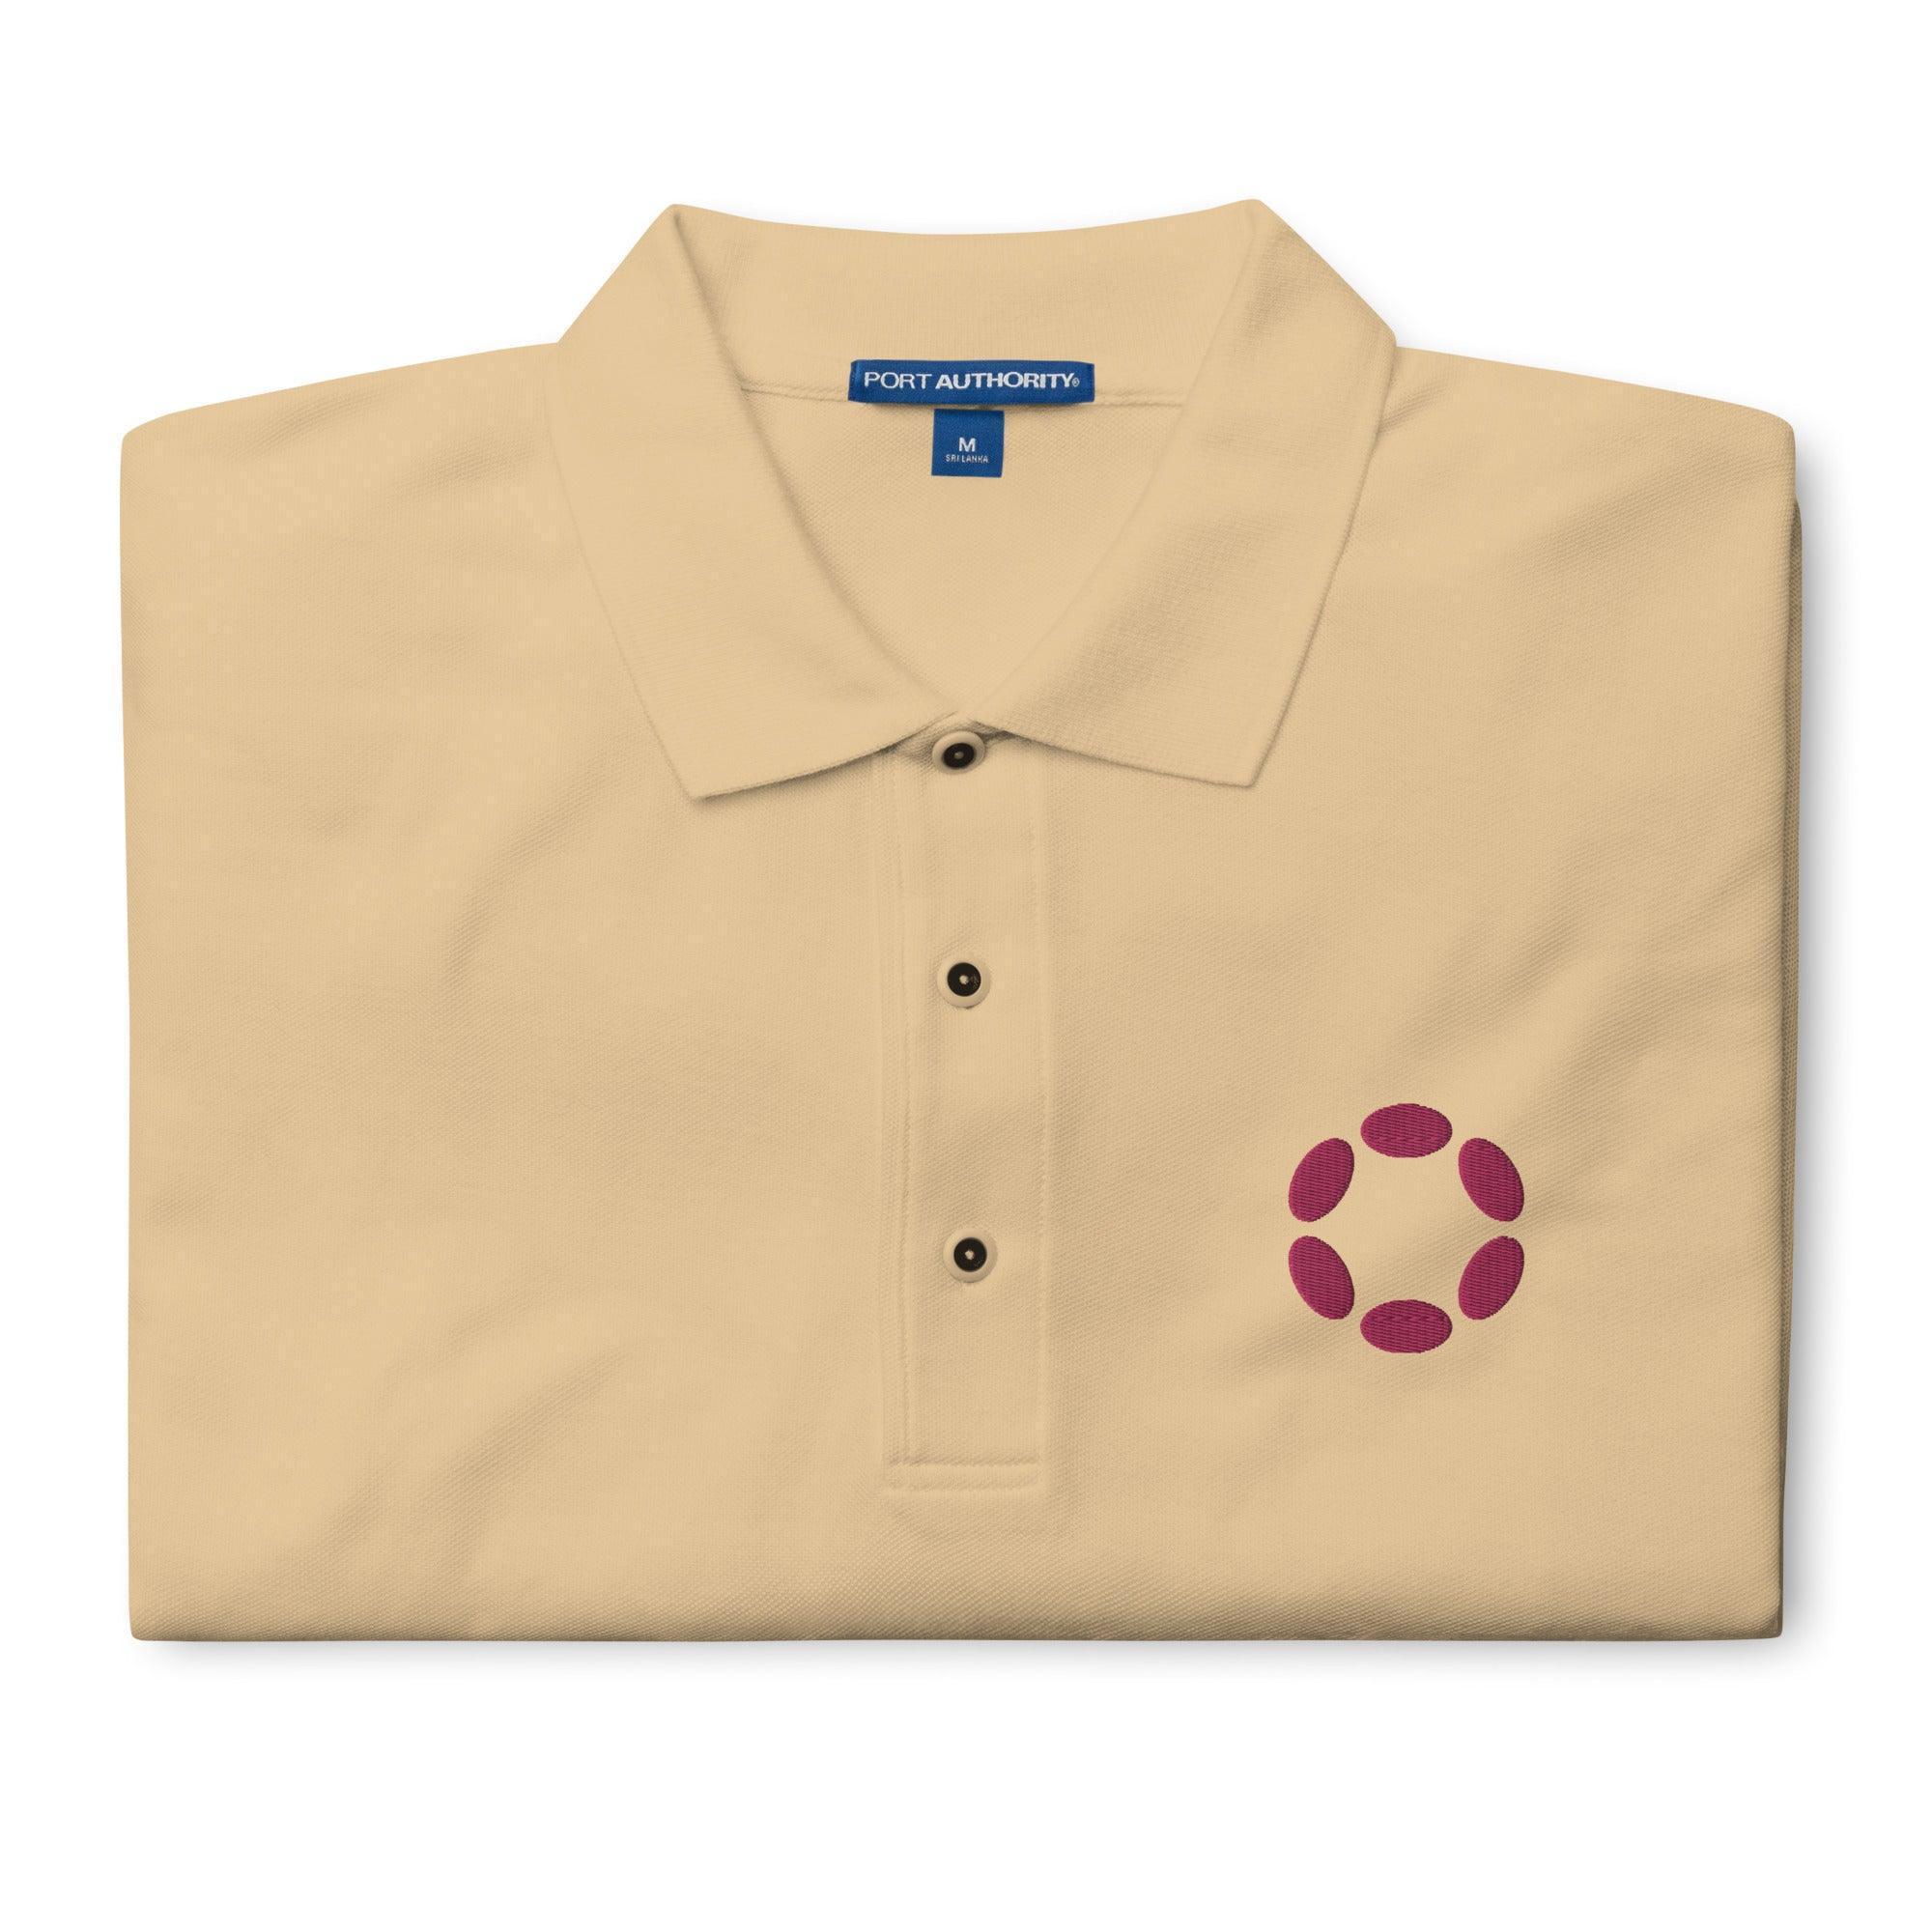 Polkadot-Network Polo Shirt - InvestmenTees